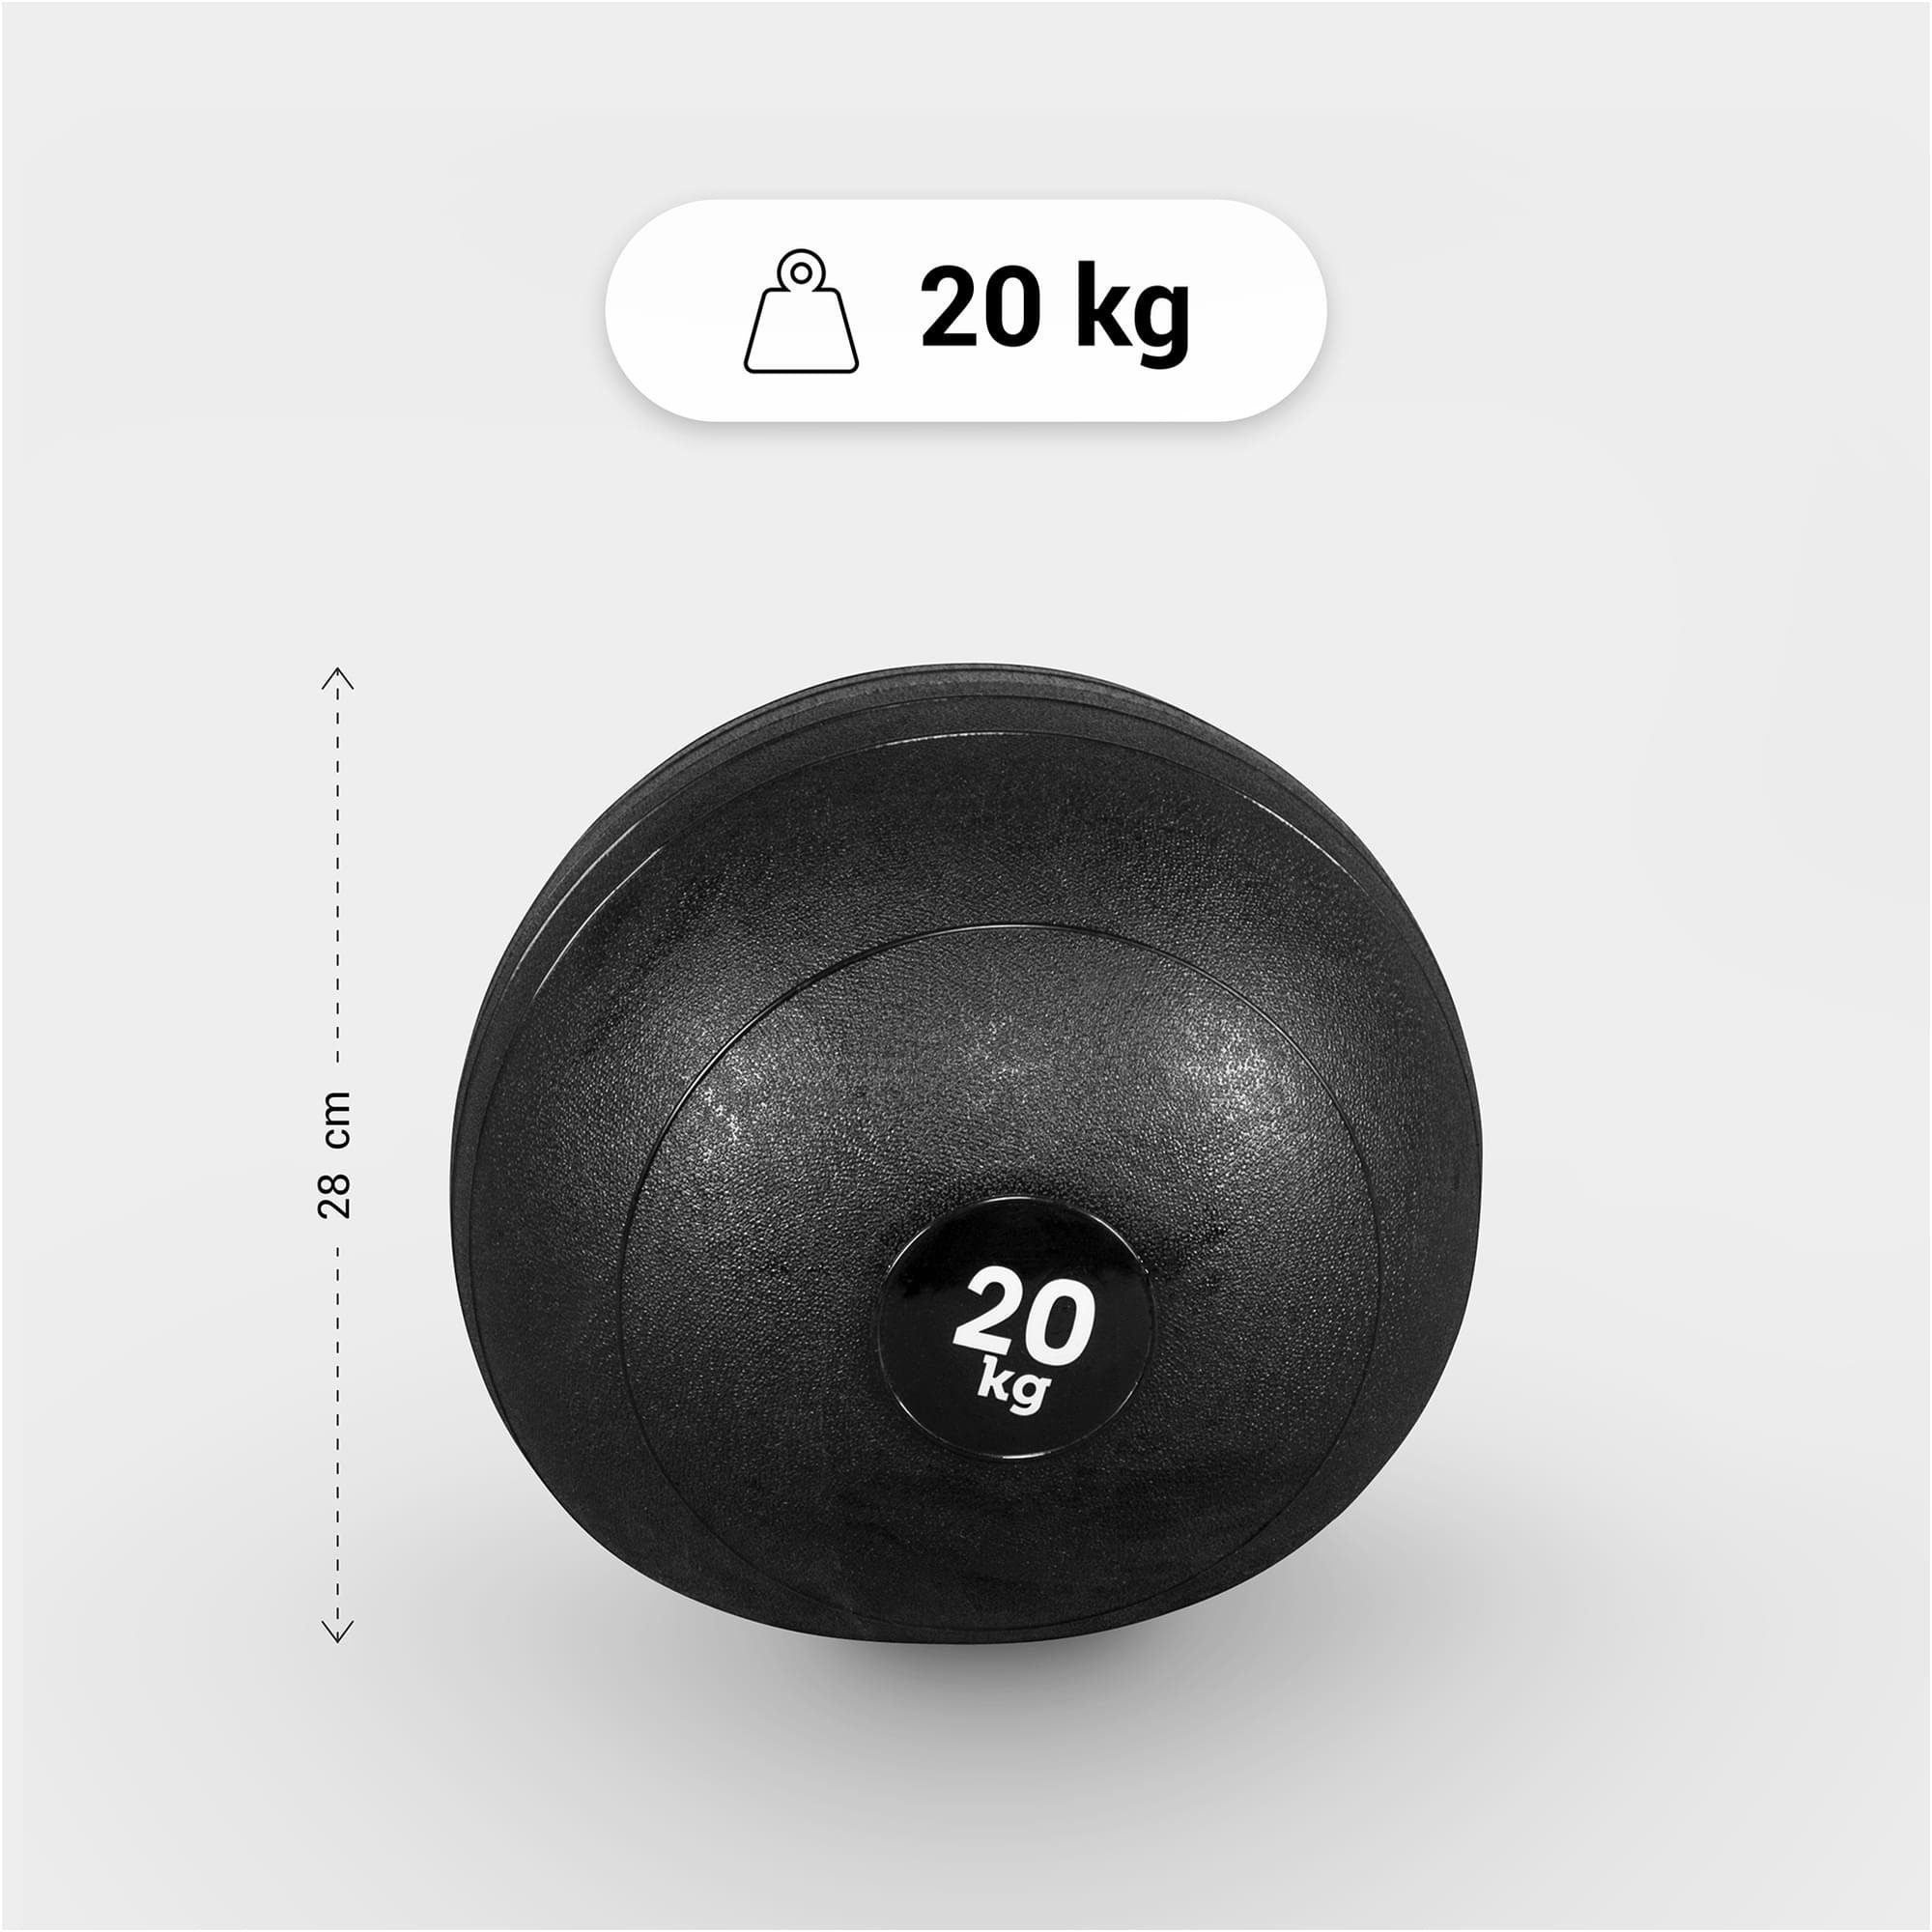 5kg, 10kg, GORILLA Griffiger Oberfläche Medizinball 3kg, SPORTS 15kg, 20kg, 7kg, Einzeln/Set, mit